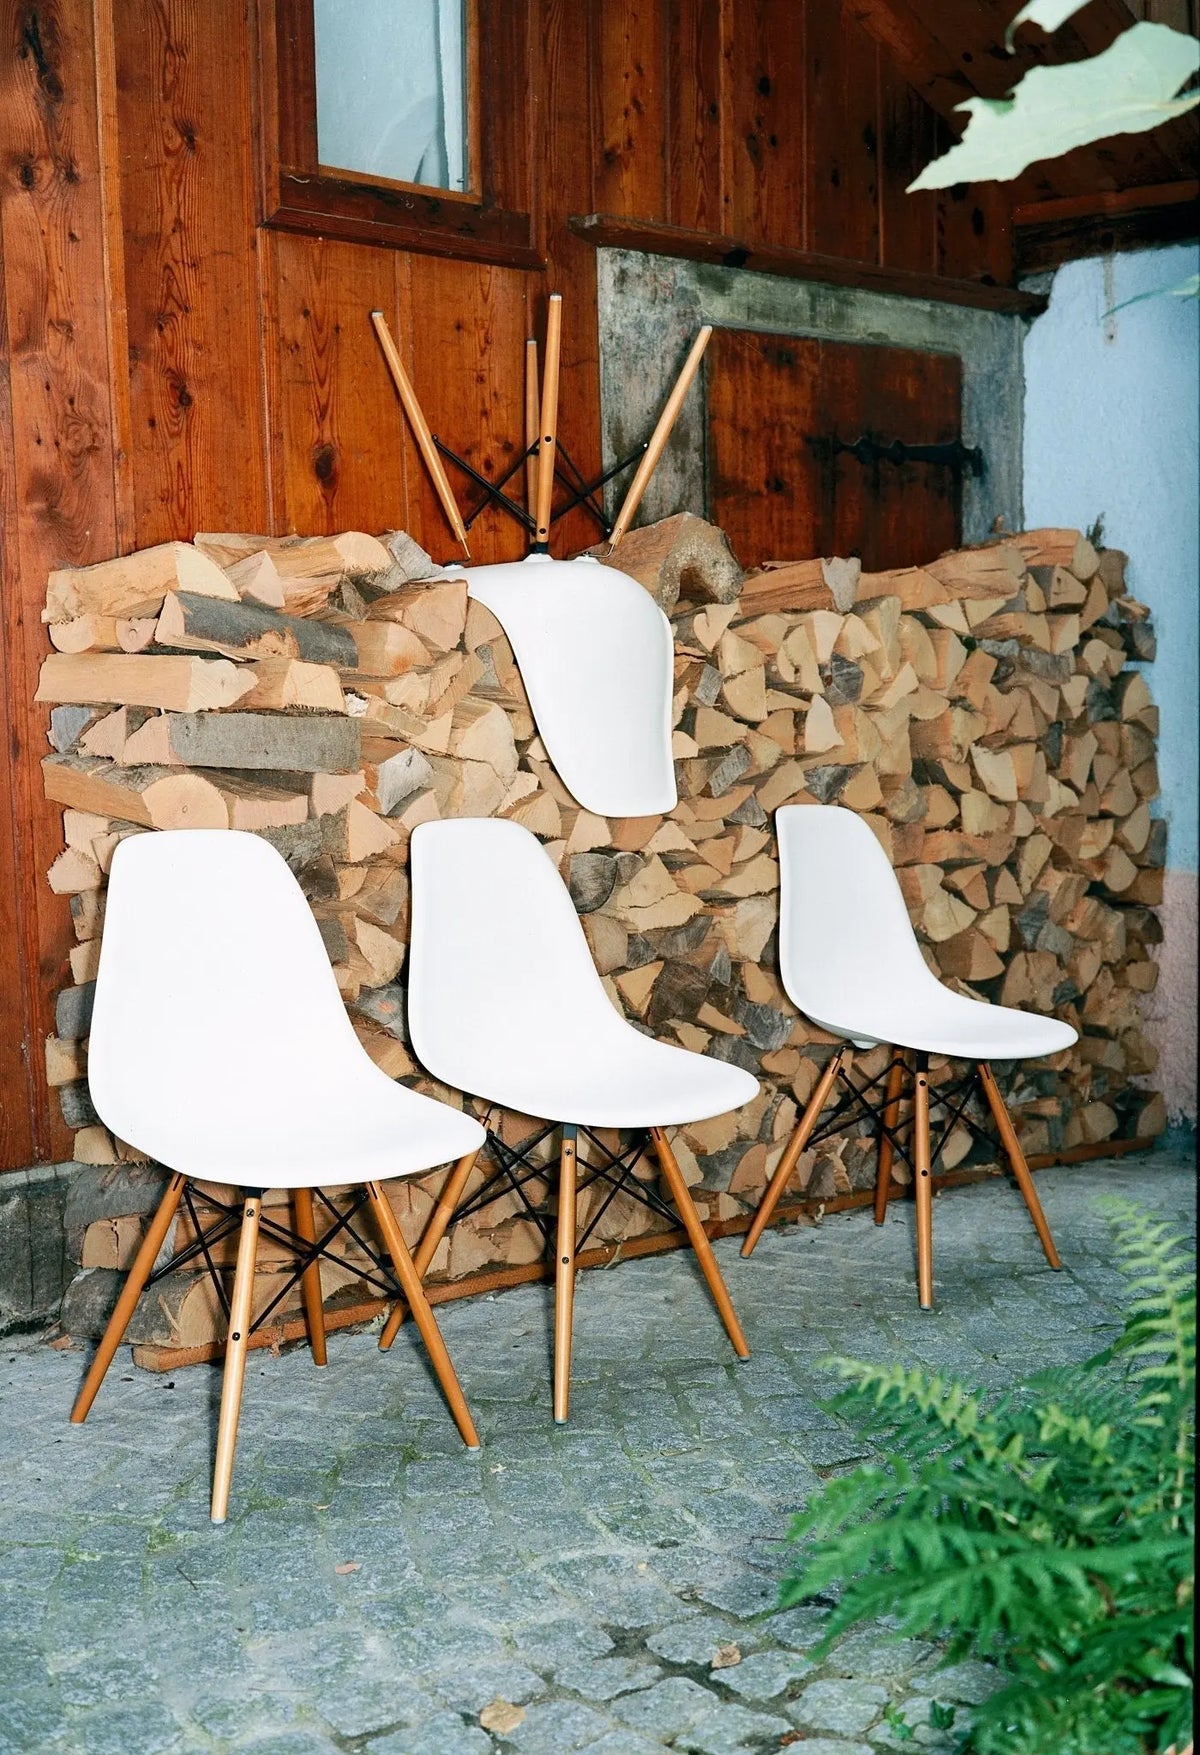 Vitra Eames DSW tuoli valkoinen/vaahtera (vanha materiaali)